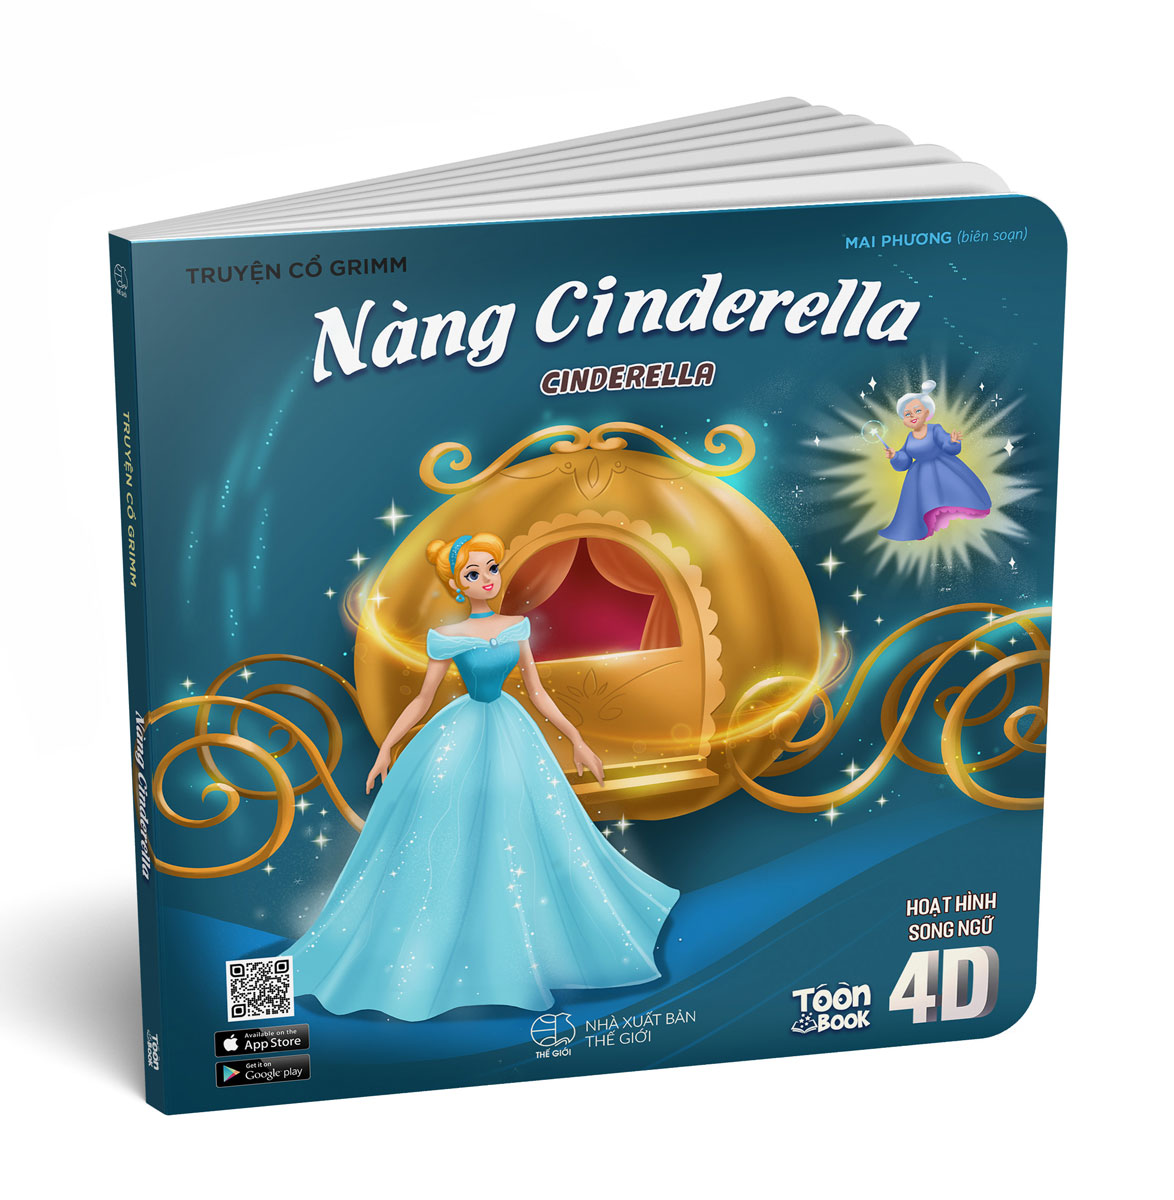 Hoạt Hình Song Ngữ 4D - Nàng Cinderella